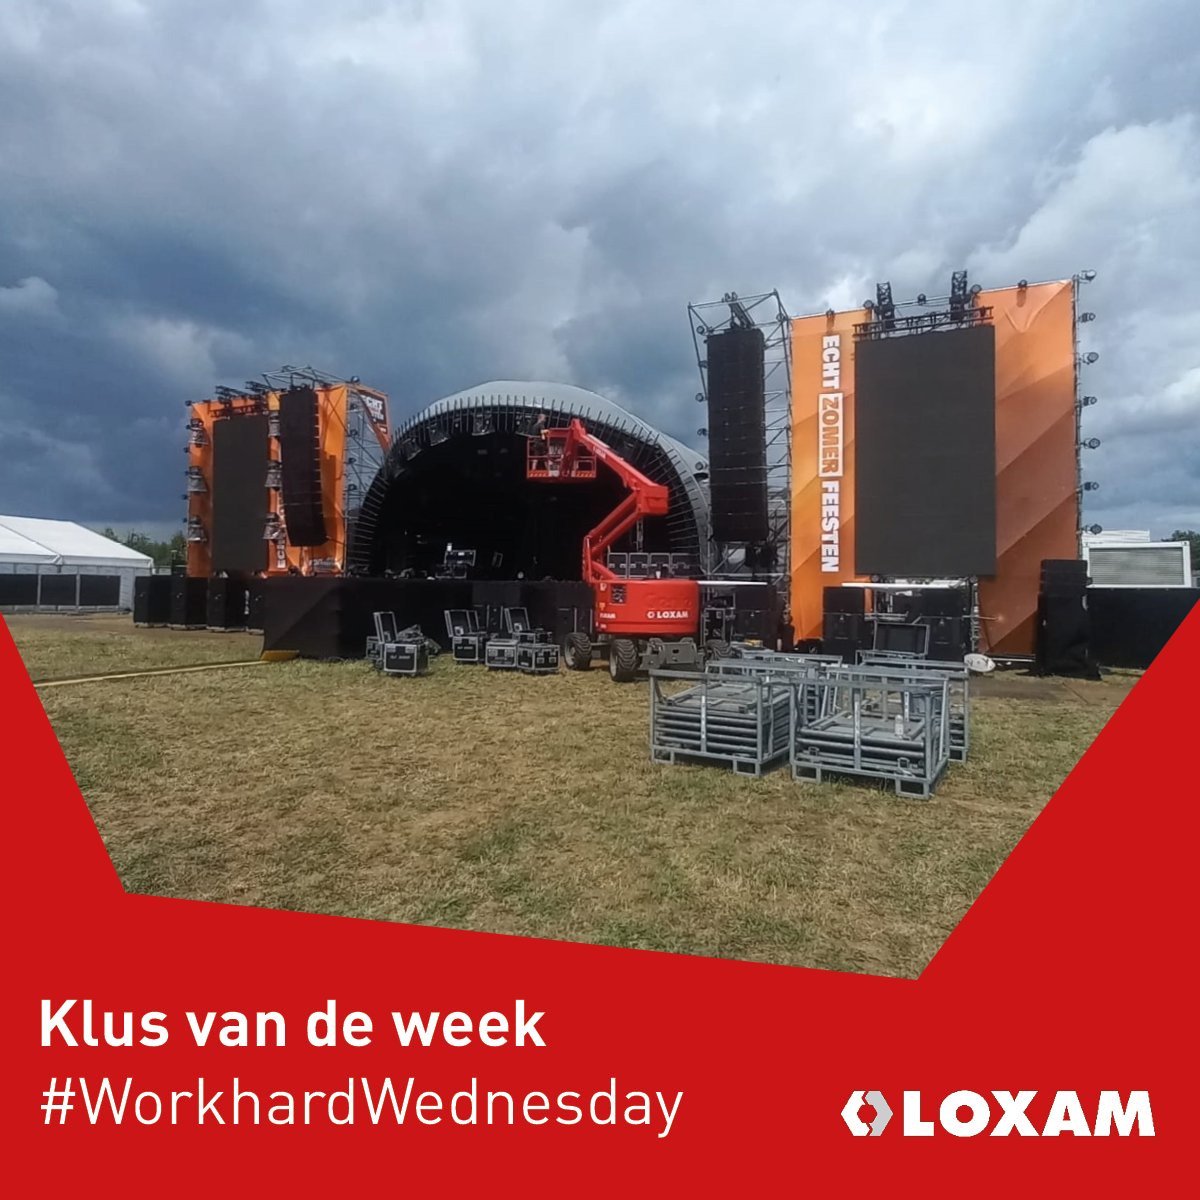 Klus van de week 🎉
Loxam Nederland leverde onlangs materieel voor de op- en afbouw van de geweldige Echt Zomer Feesten! 
Als leverancier in de evenementenbranche hebben we alles wat je nodig hebt voor een spectaculair evenement. 
Ontdek ons aanbod hier: bit.ly/456c73x